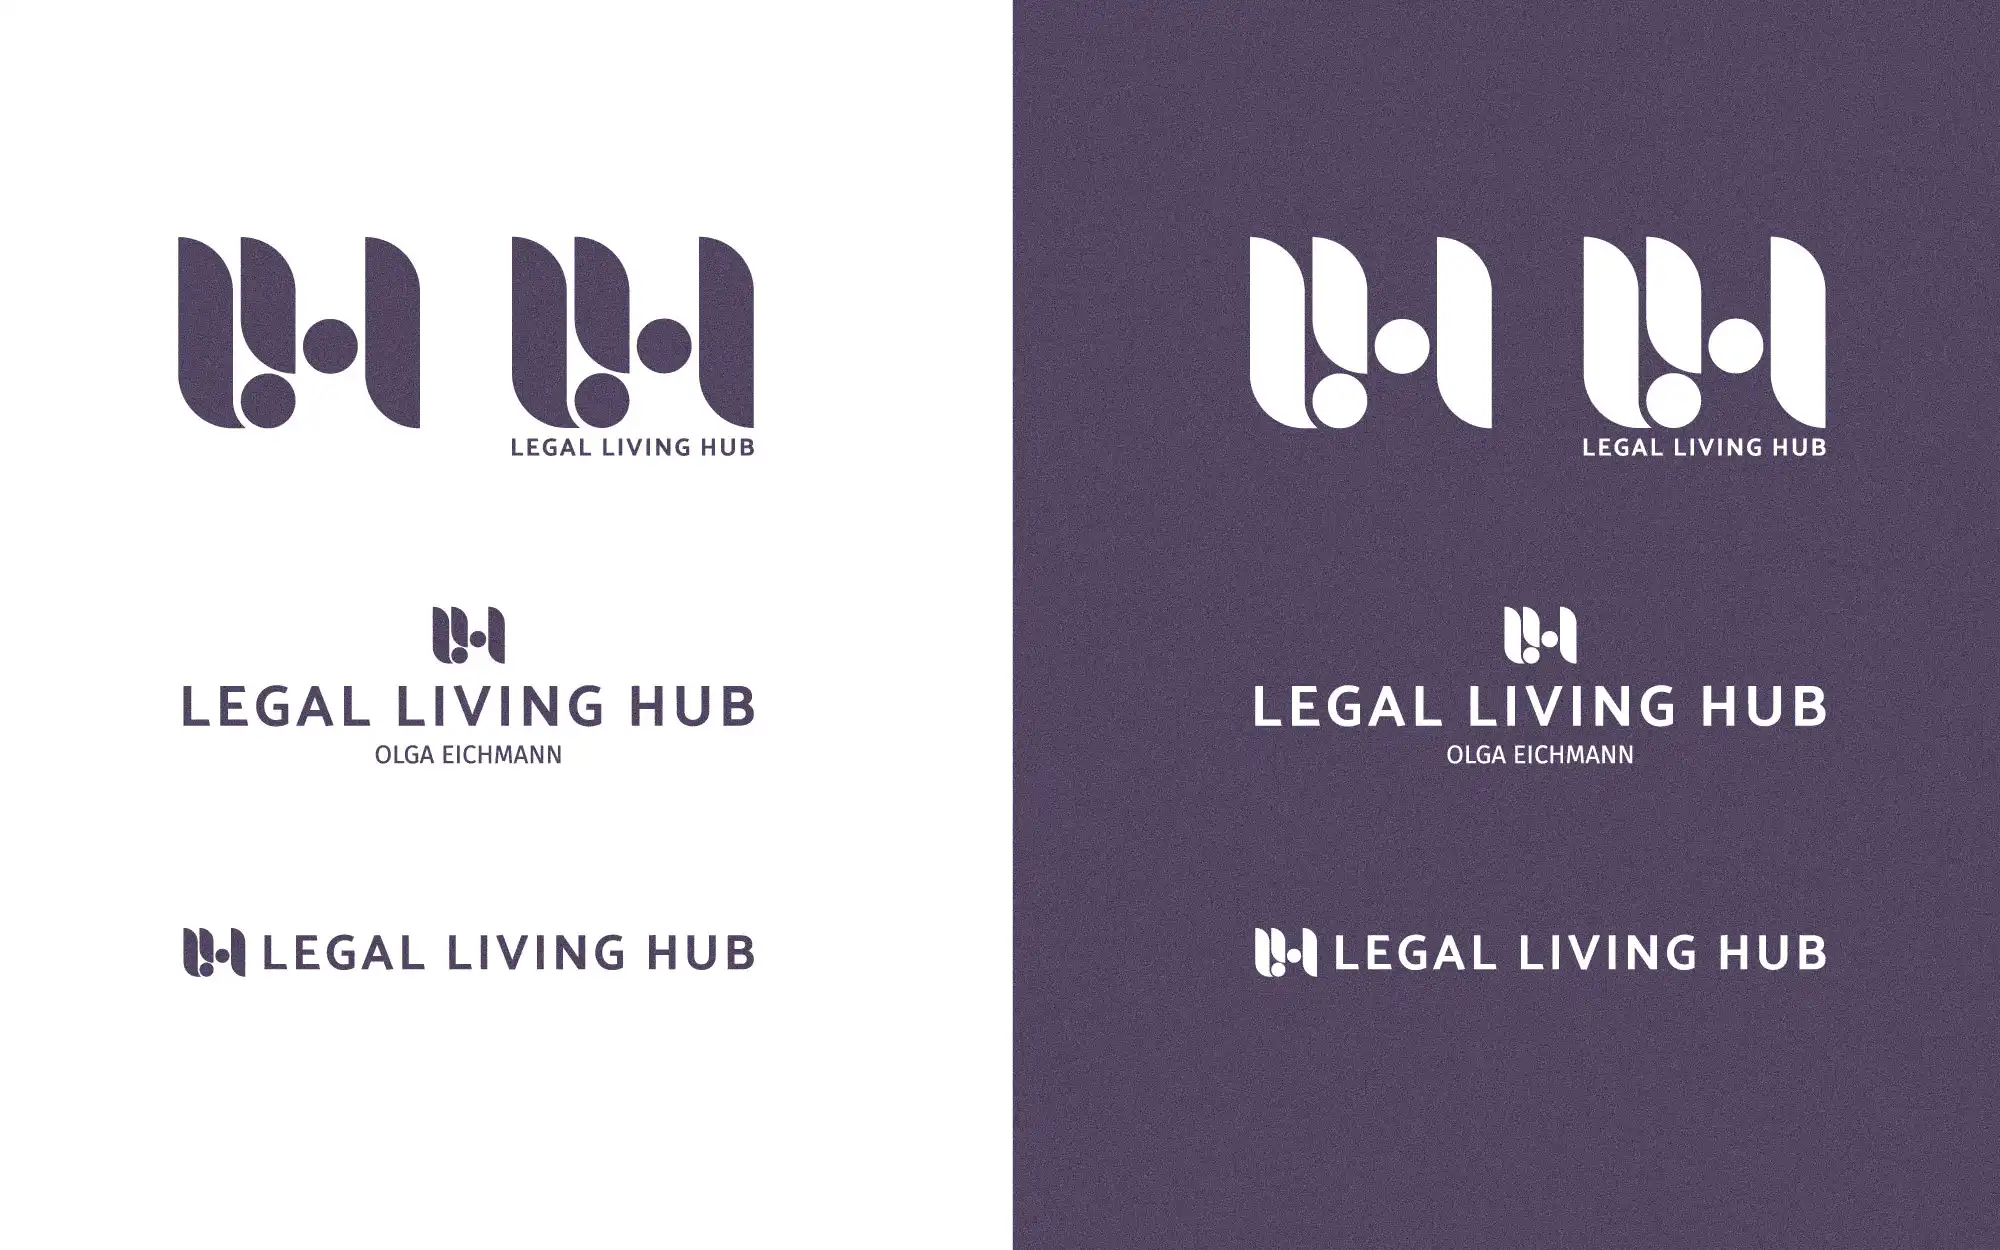 Legal Living Hub Logos